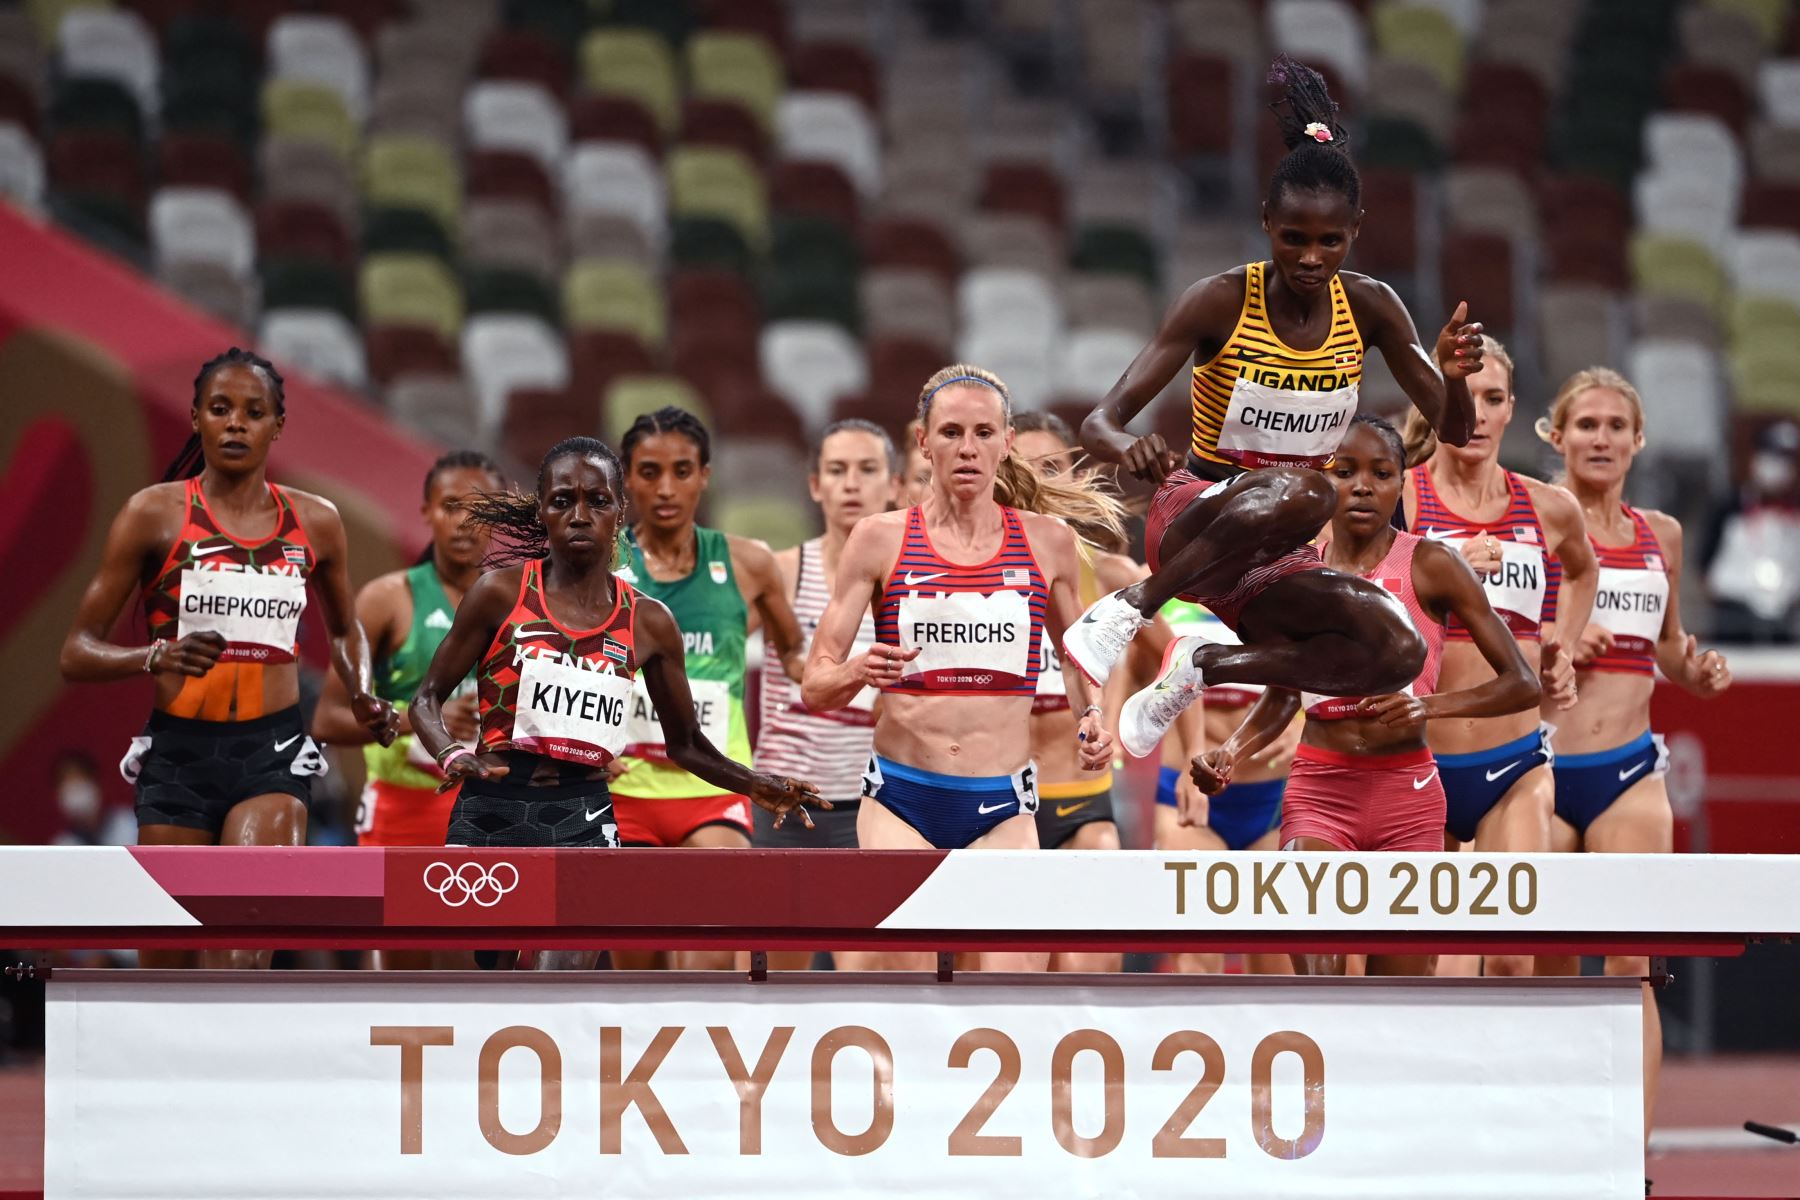 Los atletas compiten en la final femenina de carrera de obstáculos de 3000 m durante los Juegos Olímpicos de Tokio 2020.
Foto: AFP